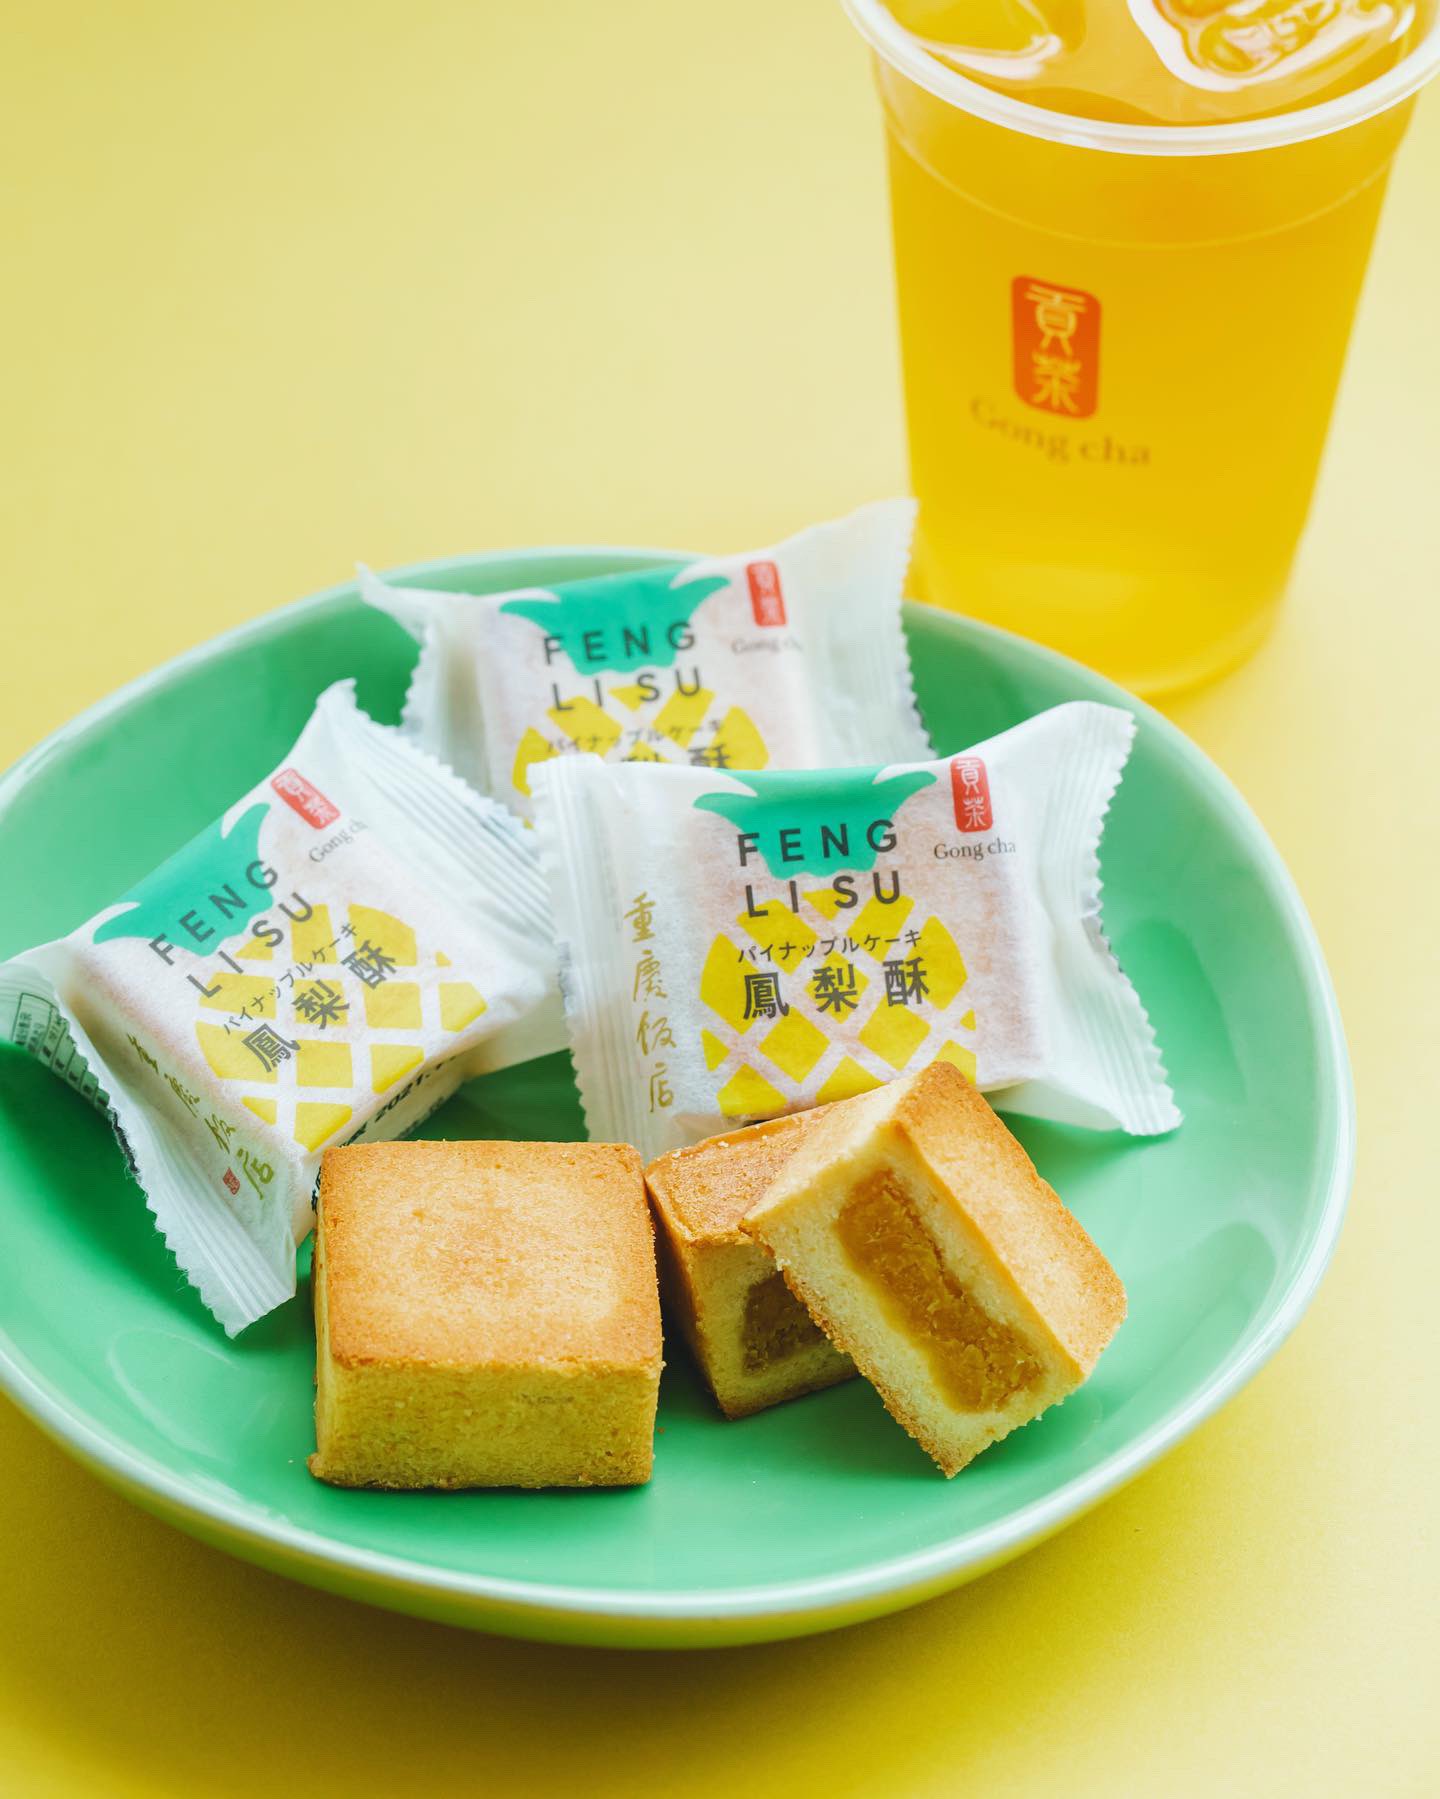 Gong Cha 貢茶 ゴンチャ ゴンチャ 重慶飯店 販売対象店舗限定 ゴンチャの甜品 デザート として 名店 重慶飯店の パイナップルケーキ が登場しました お近くにお寄りの際はぜひお試しください 各種ストレートティー ミルクティーとも